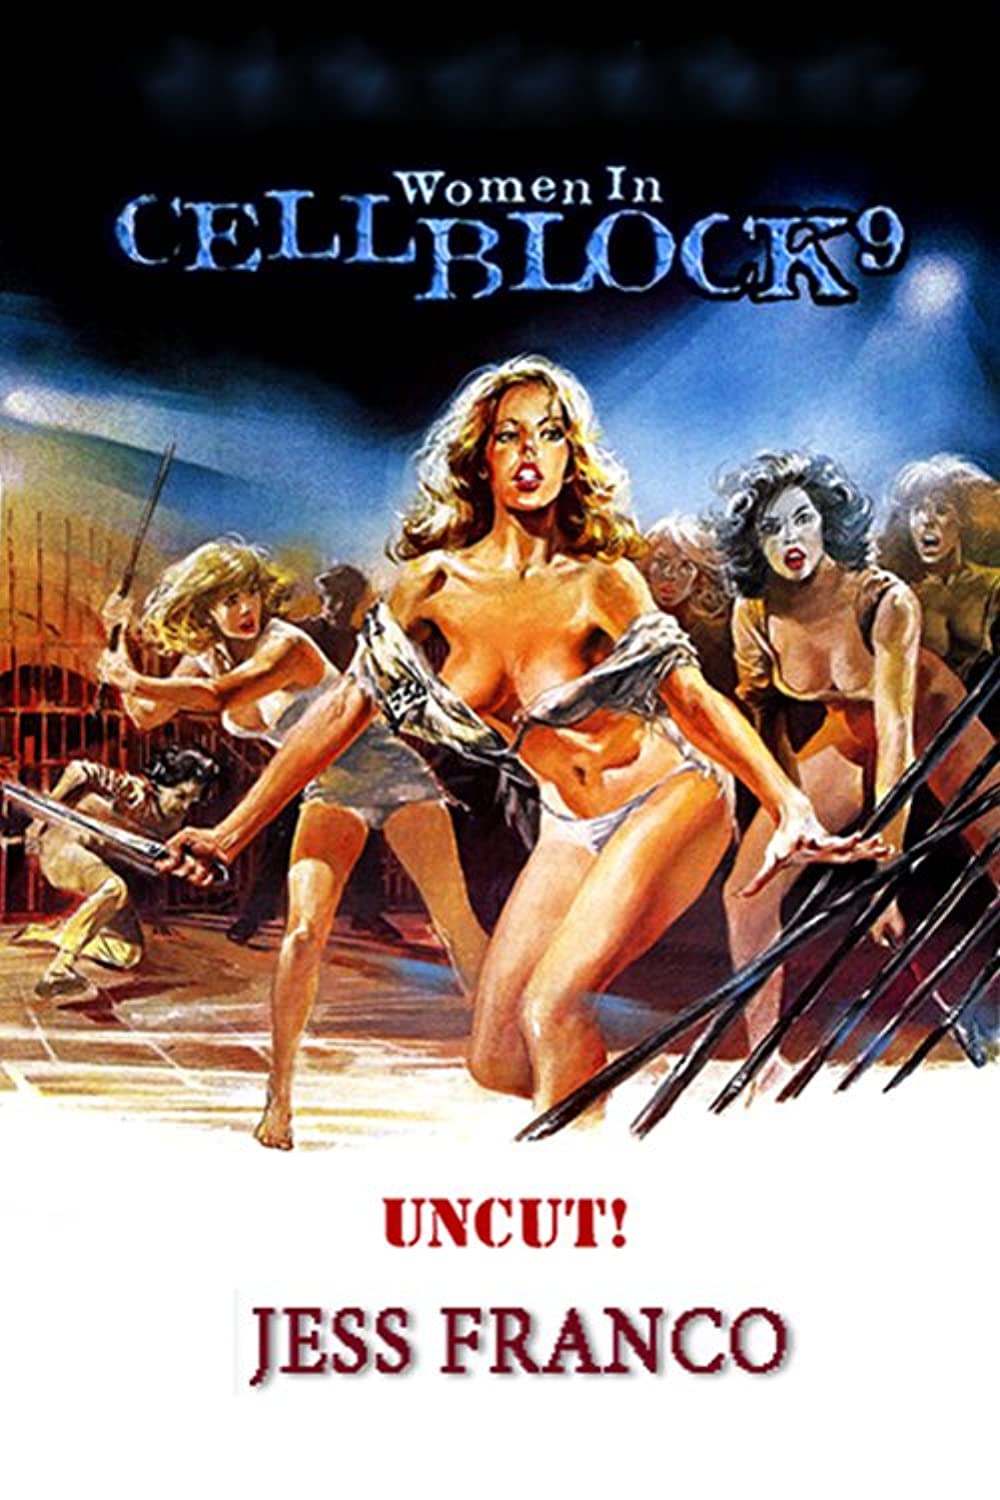 women in cellblock 9 (1978)